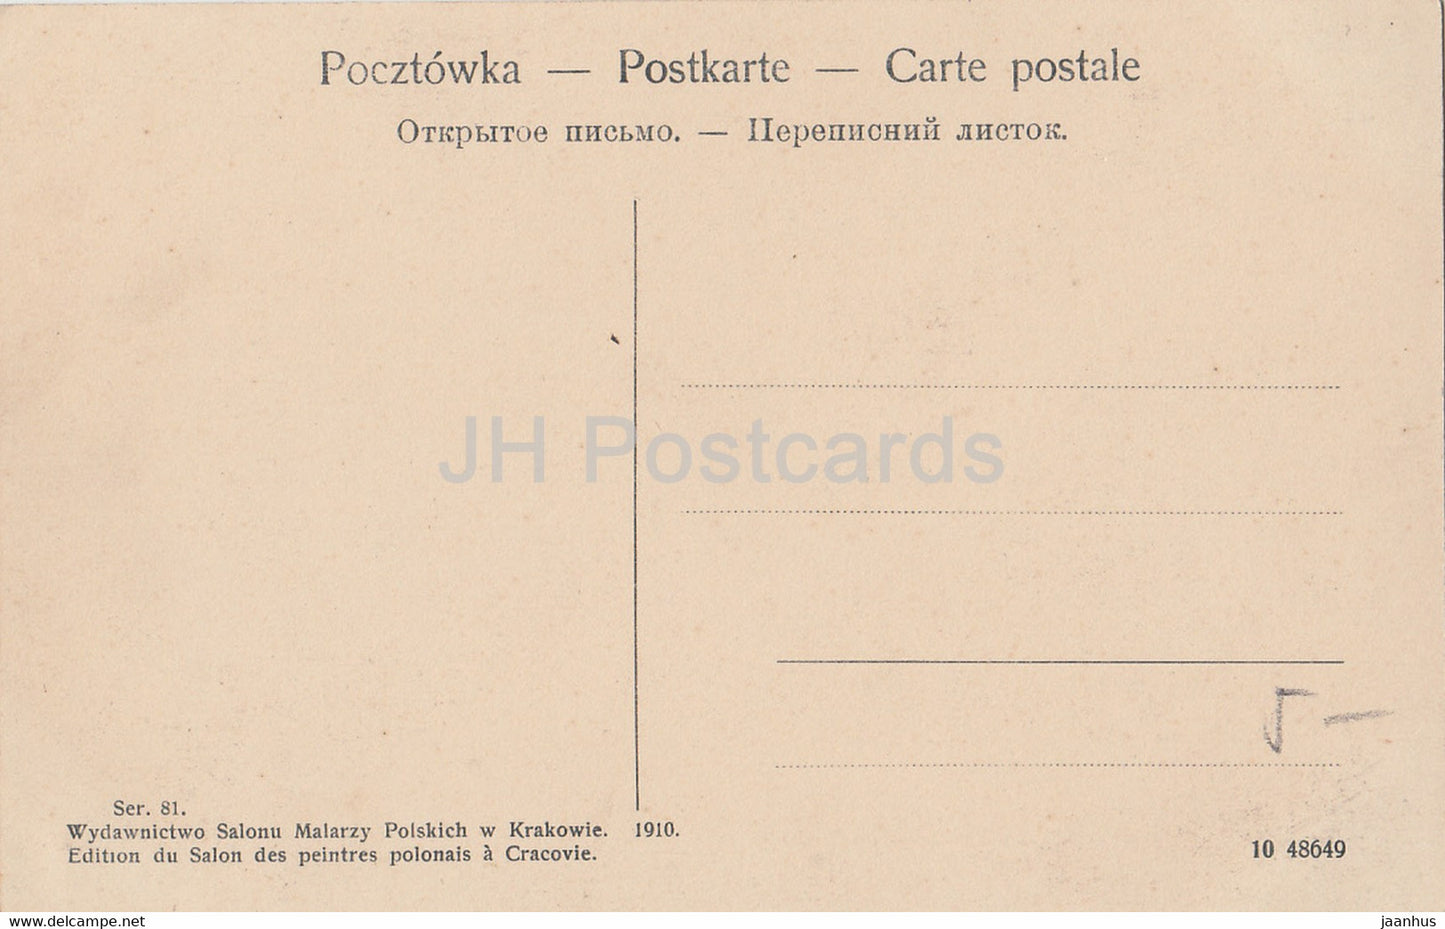 Eisenbahnbrücke - Zug - Ser 81 - alte Postkarte - 1910 - Polen - unbenutzt